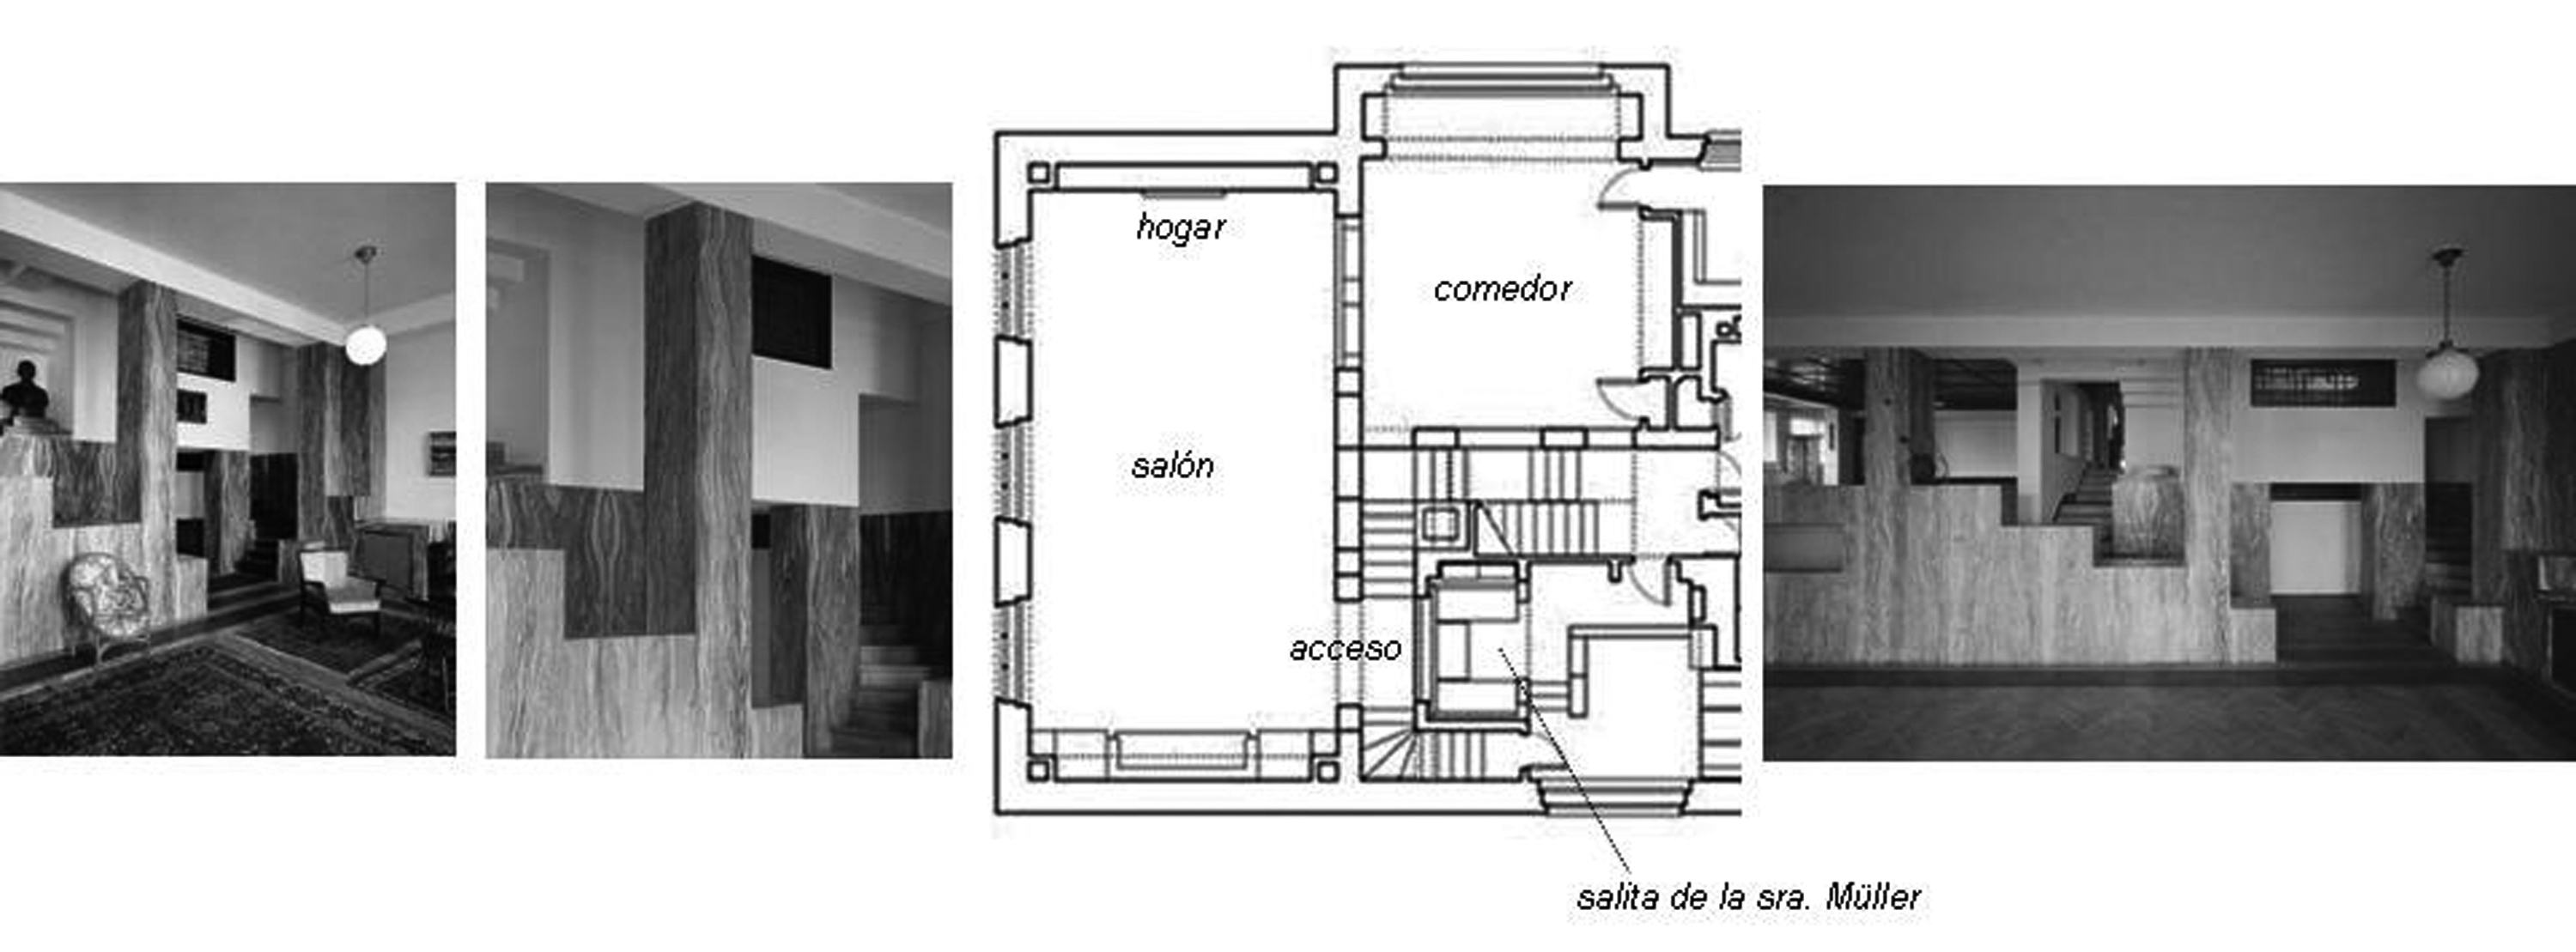 Salón de la Casa Müller. Fotos y planta donde se ve la relación que guarda el Salón con la Salita de la señora Müller